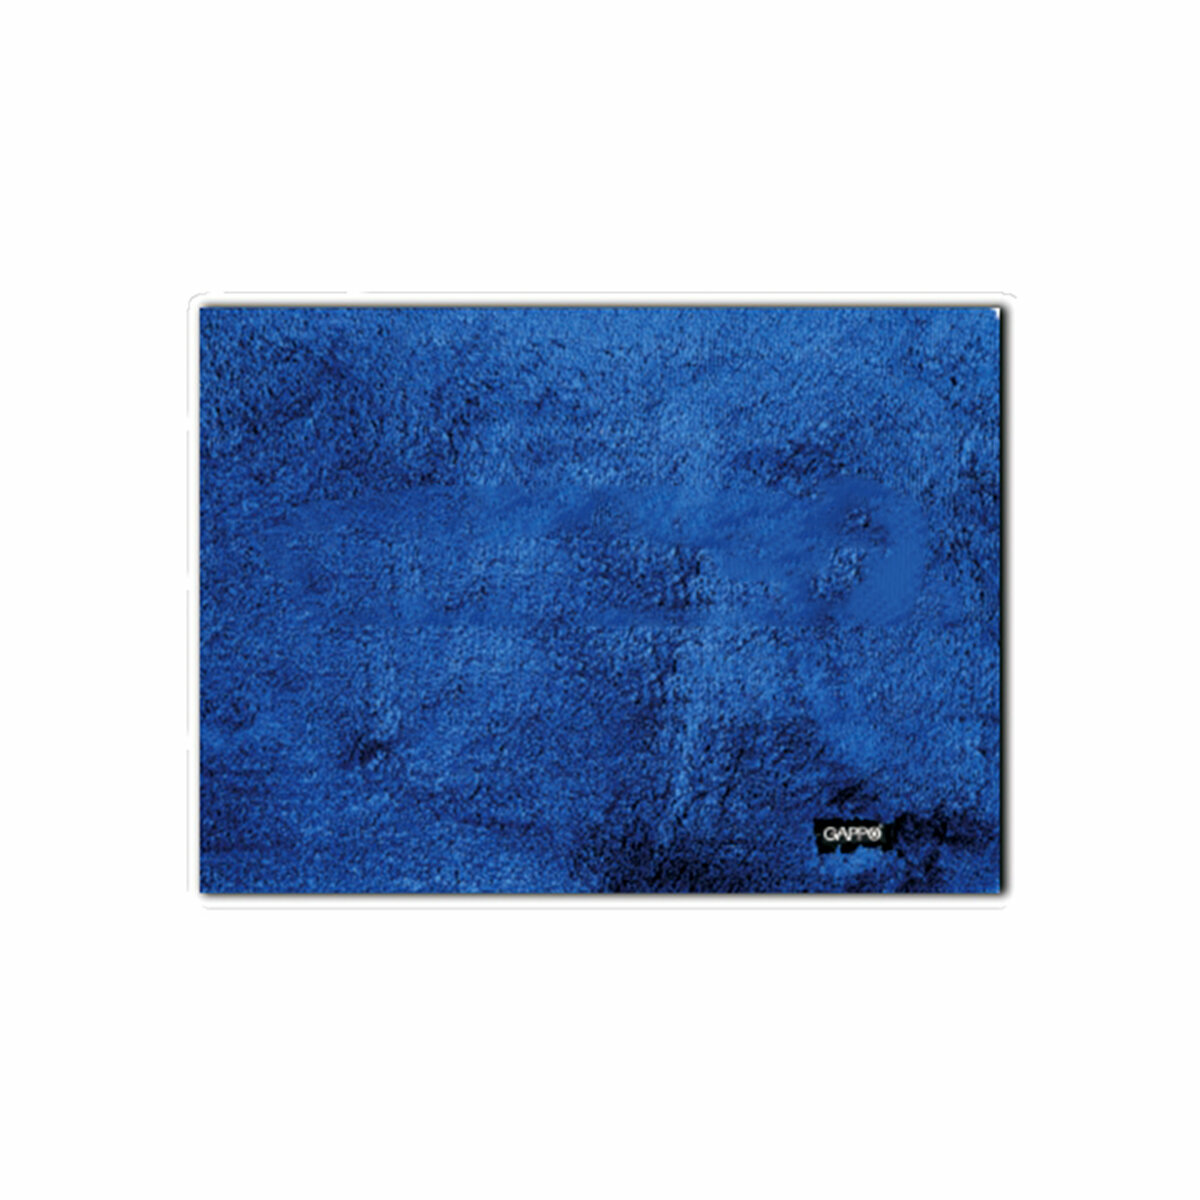 Коврик в ванную Gappo G85406, 50 x 80 см, полиэстер, синий